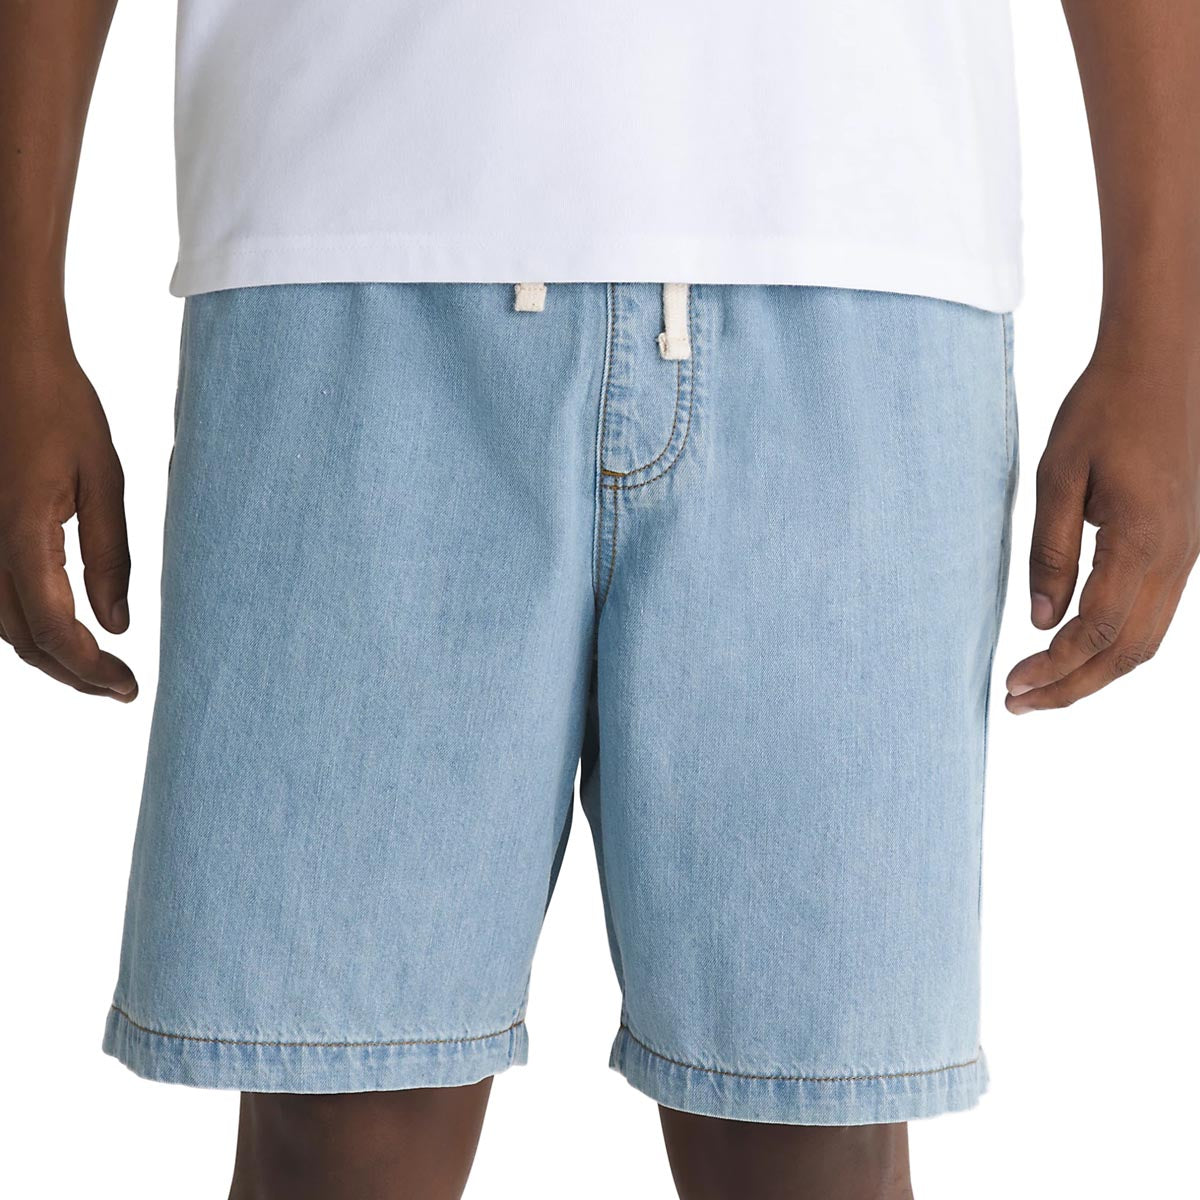 Vans Range Denim Relaxed Shorts - Stonewash Blue image 2